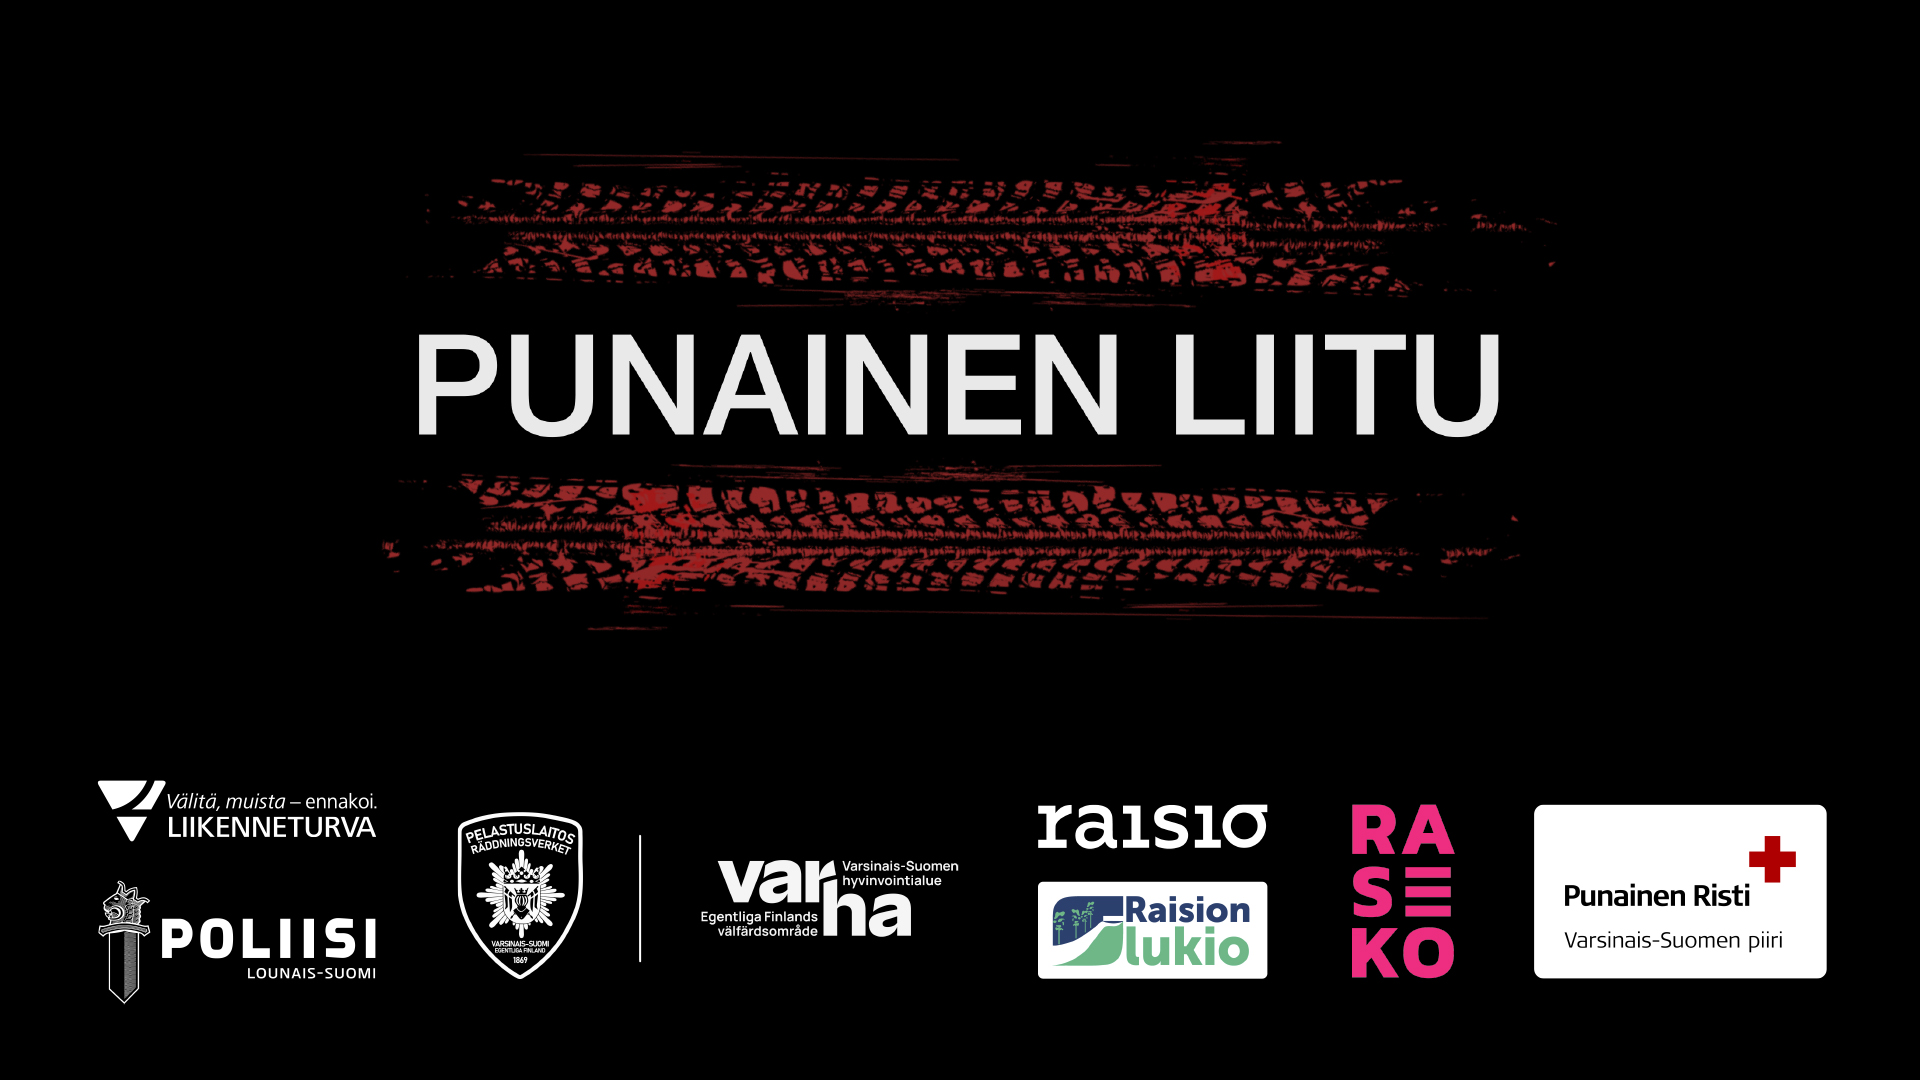 Annonsering av föreställningen Punainen Liitu. På en svart bakgrund, röda däckspår och partnerlogotyper.